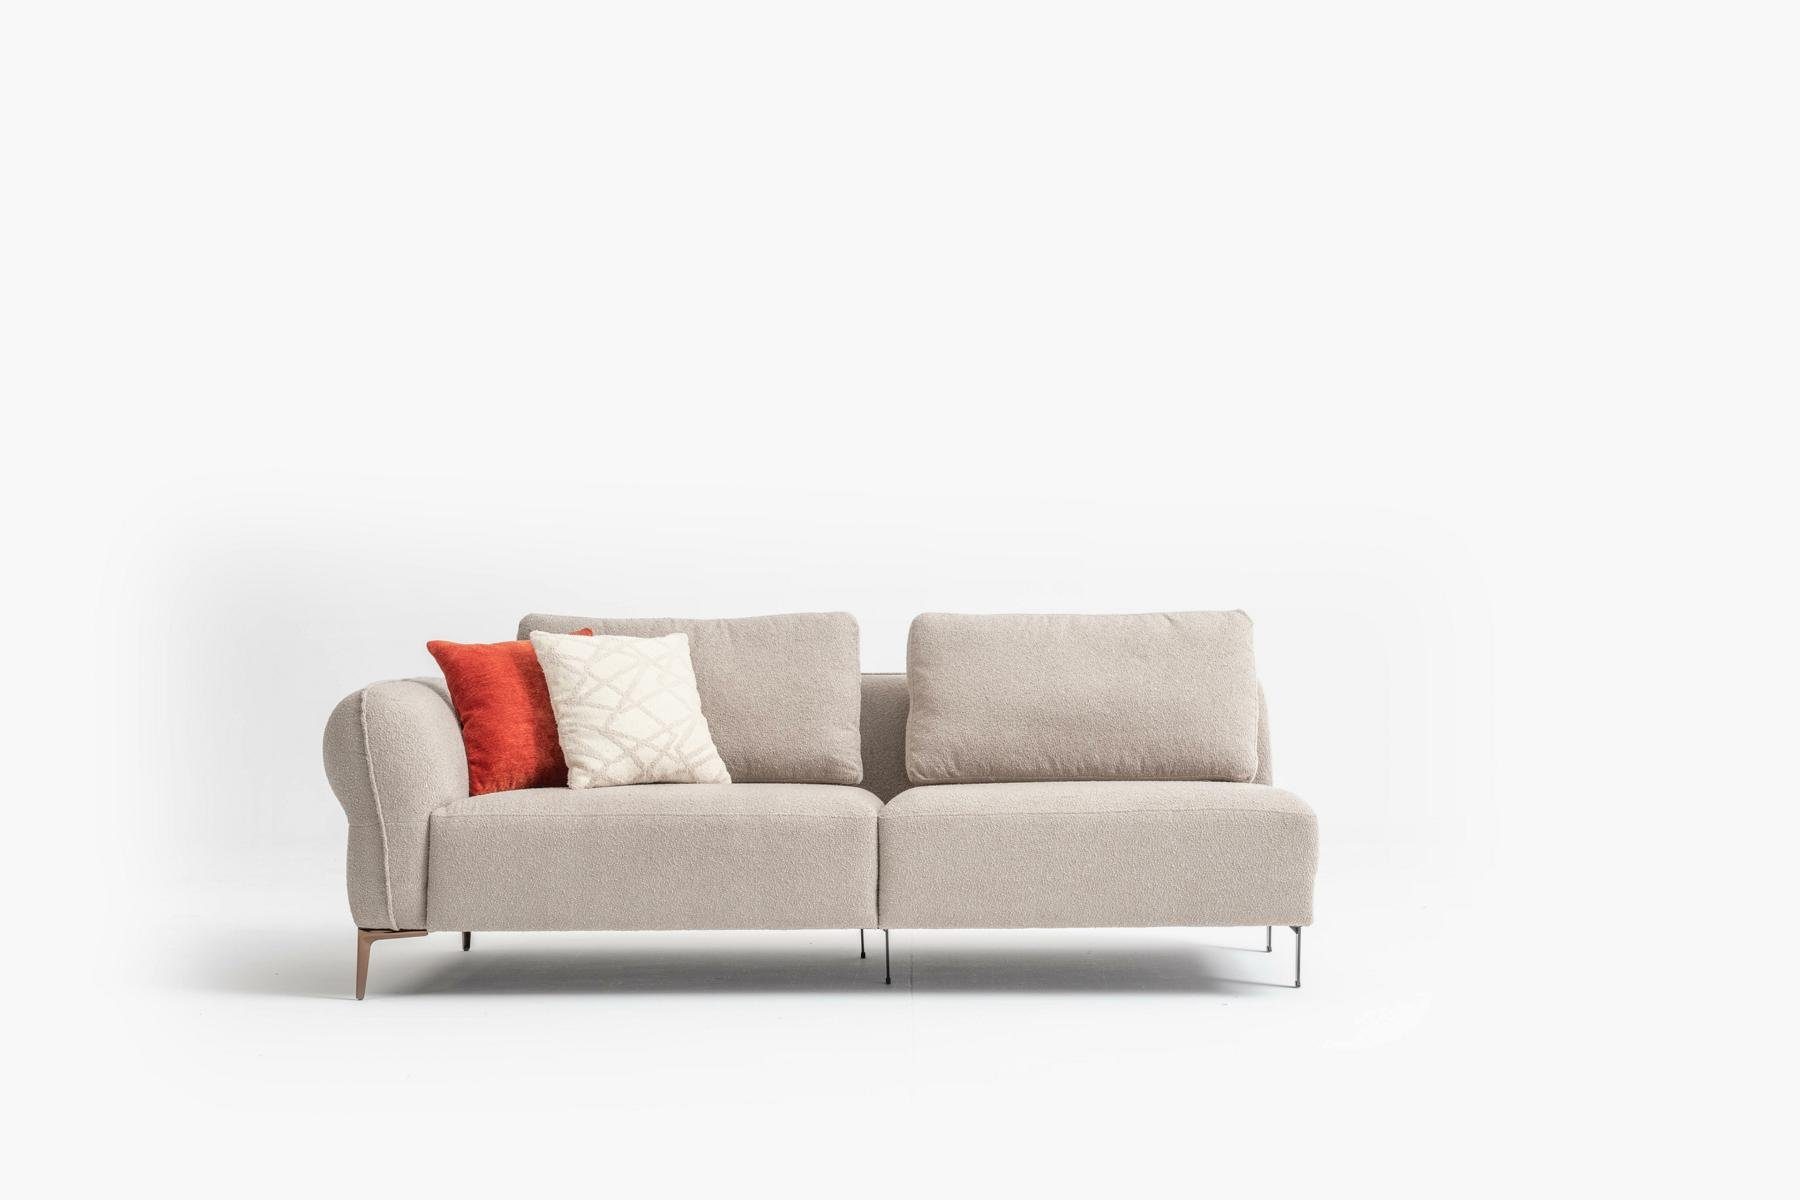 JVmoebel Big-Sofa Beige Big Sofa Couch Made Textil, in Sitzer Couchen Möbel xxl Italienische Europe 6